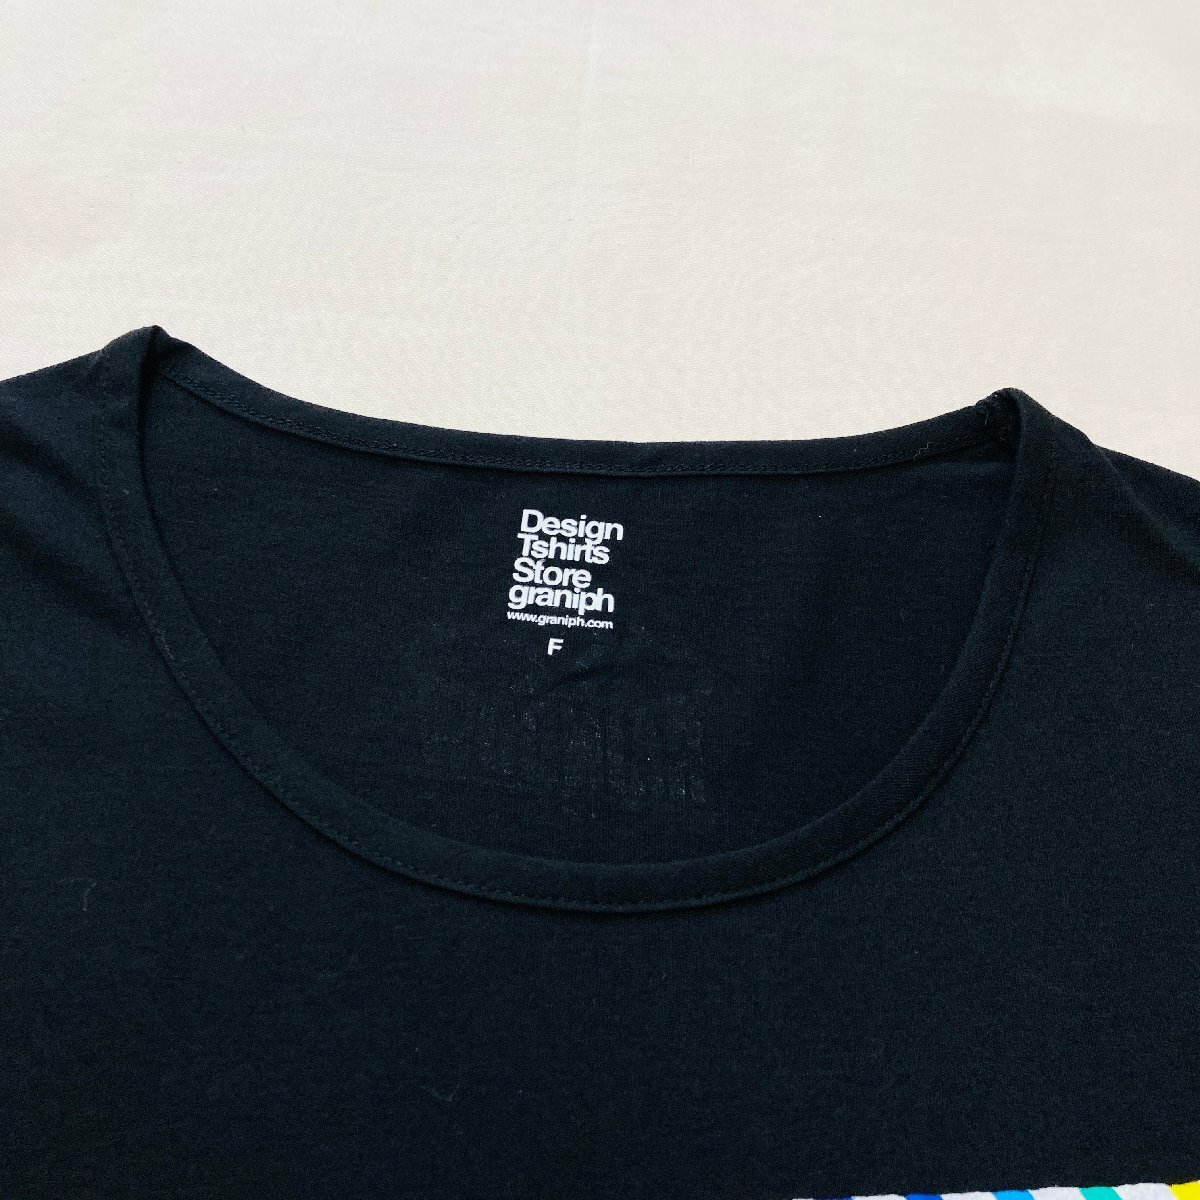 Design Tshirts Store Graniph RAINBOW プリント Tシャツ ブラック/黒 Fの画像3